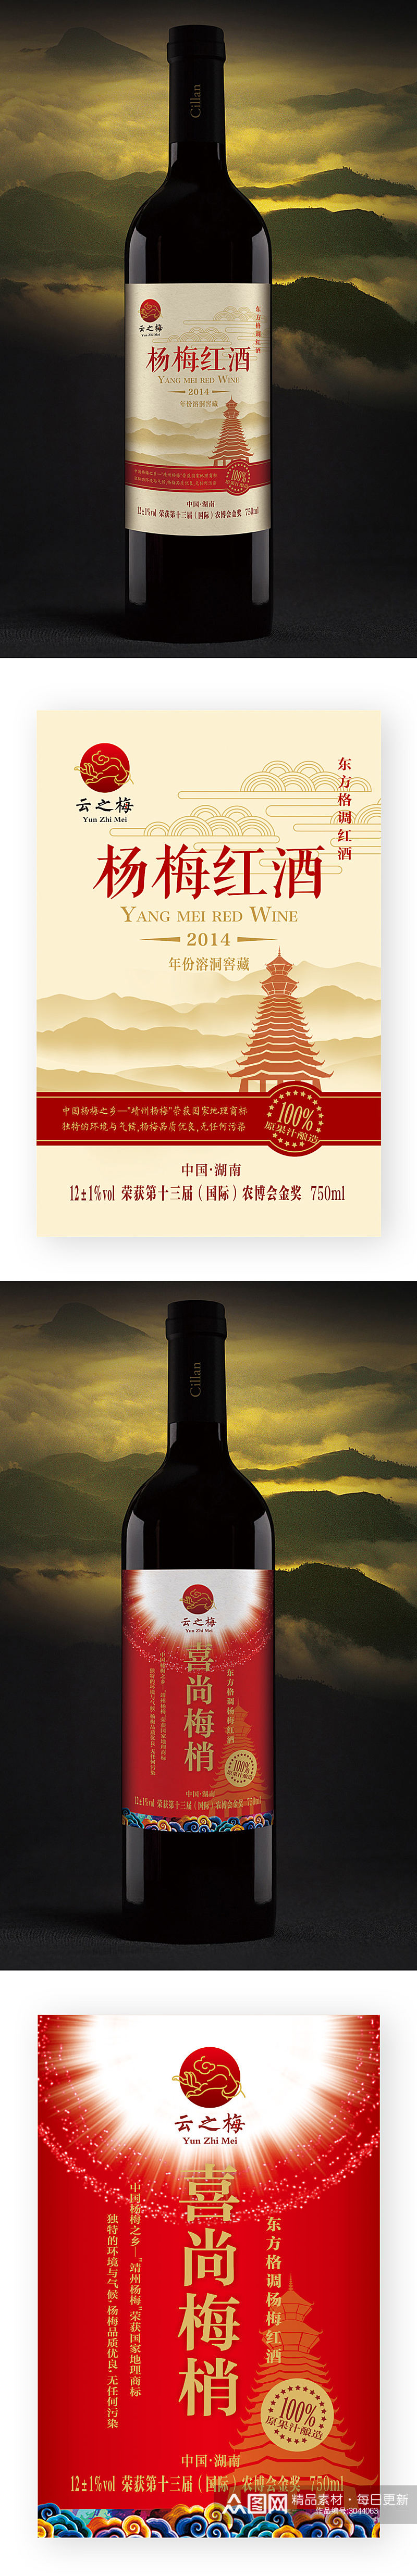 长沙扬眉商贸有限公司杨梅红酒酒标设计素材